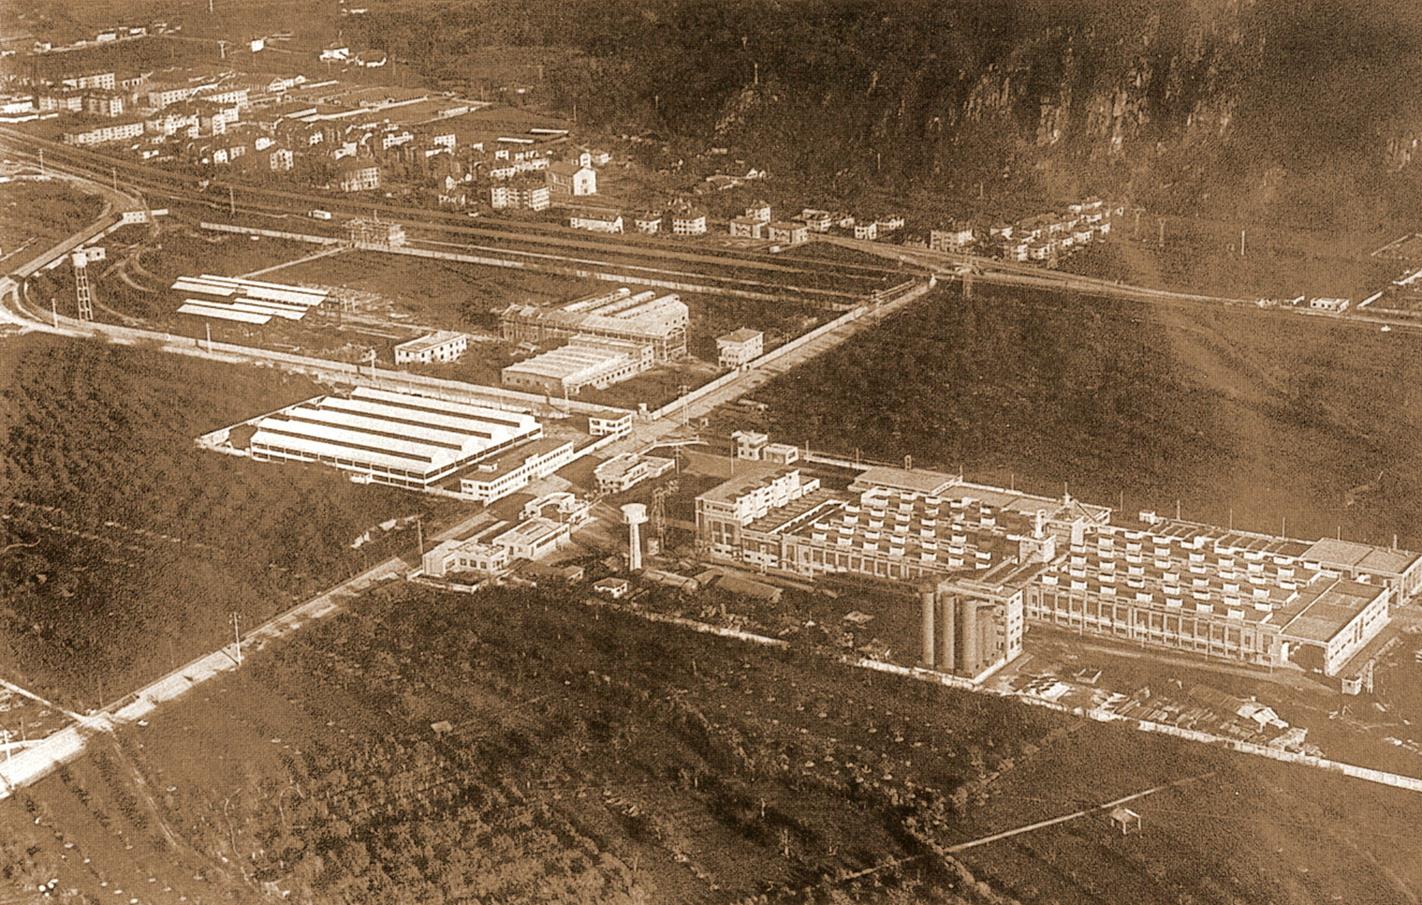 La zona industriale di Bolzano negli anni Trenta (Archivio Lancia/Iveco, Bolzano)